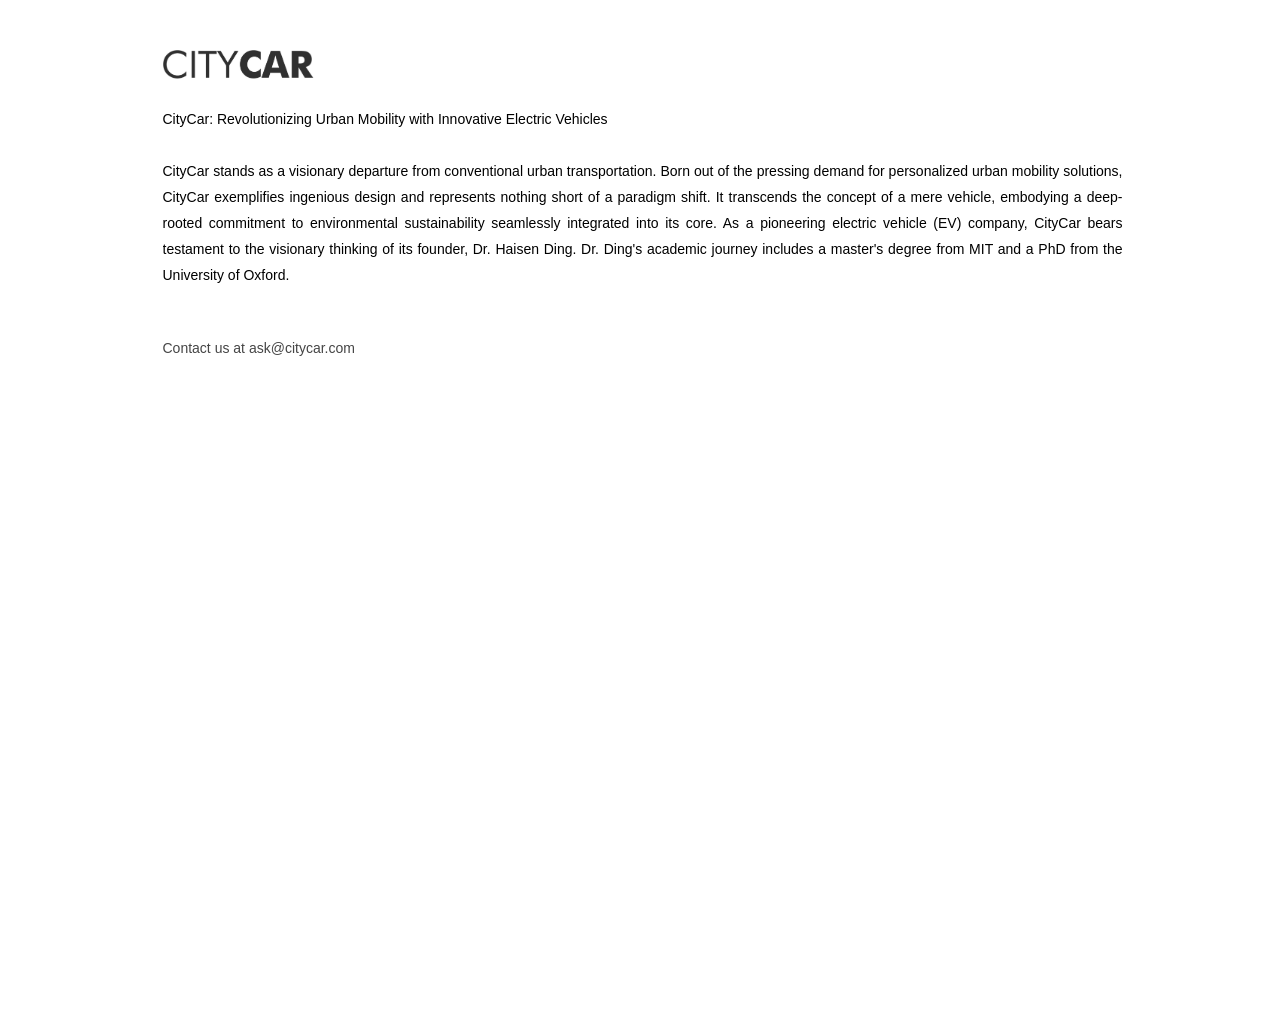 citycar.com